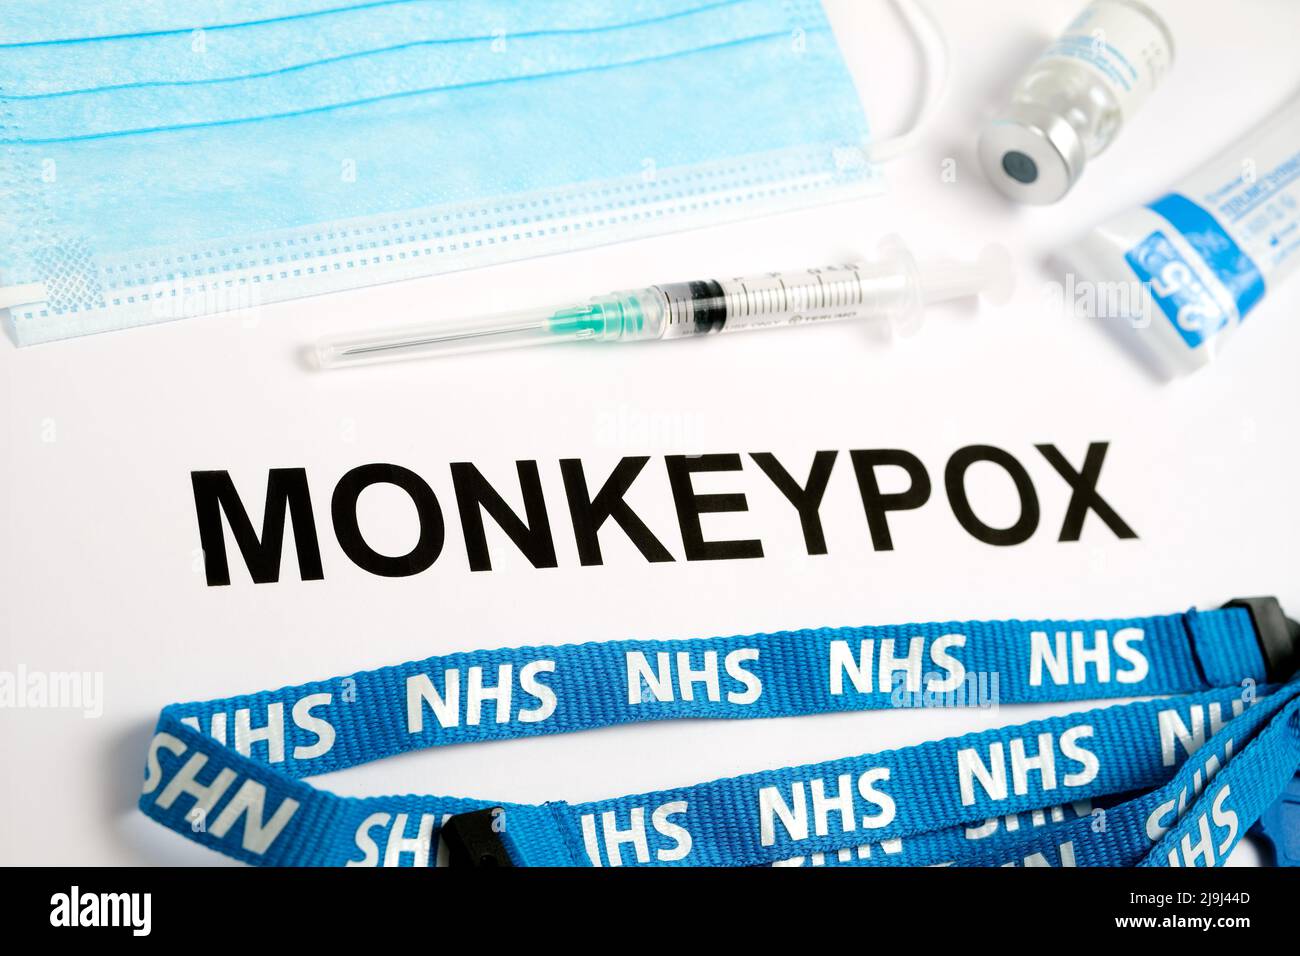 Nome dell'infezione DA MONKEYPOX visto stampato su carta con siringa e cordino NHS accanto ad essa. Concetto. Stafford, Regno Unito, 23 maggio 2022. Foto Stock